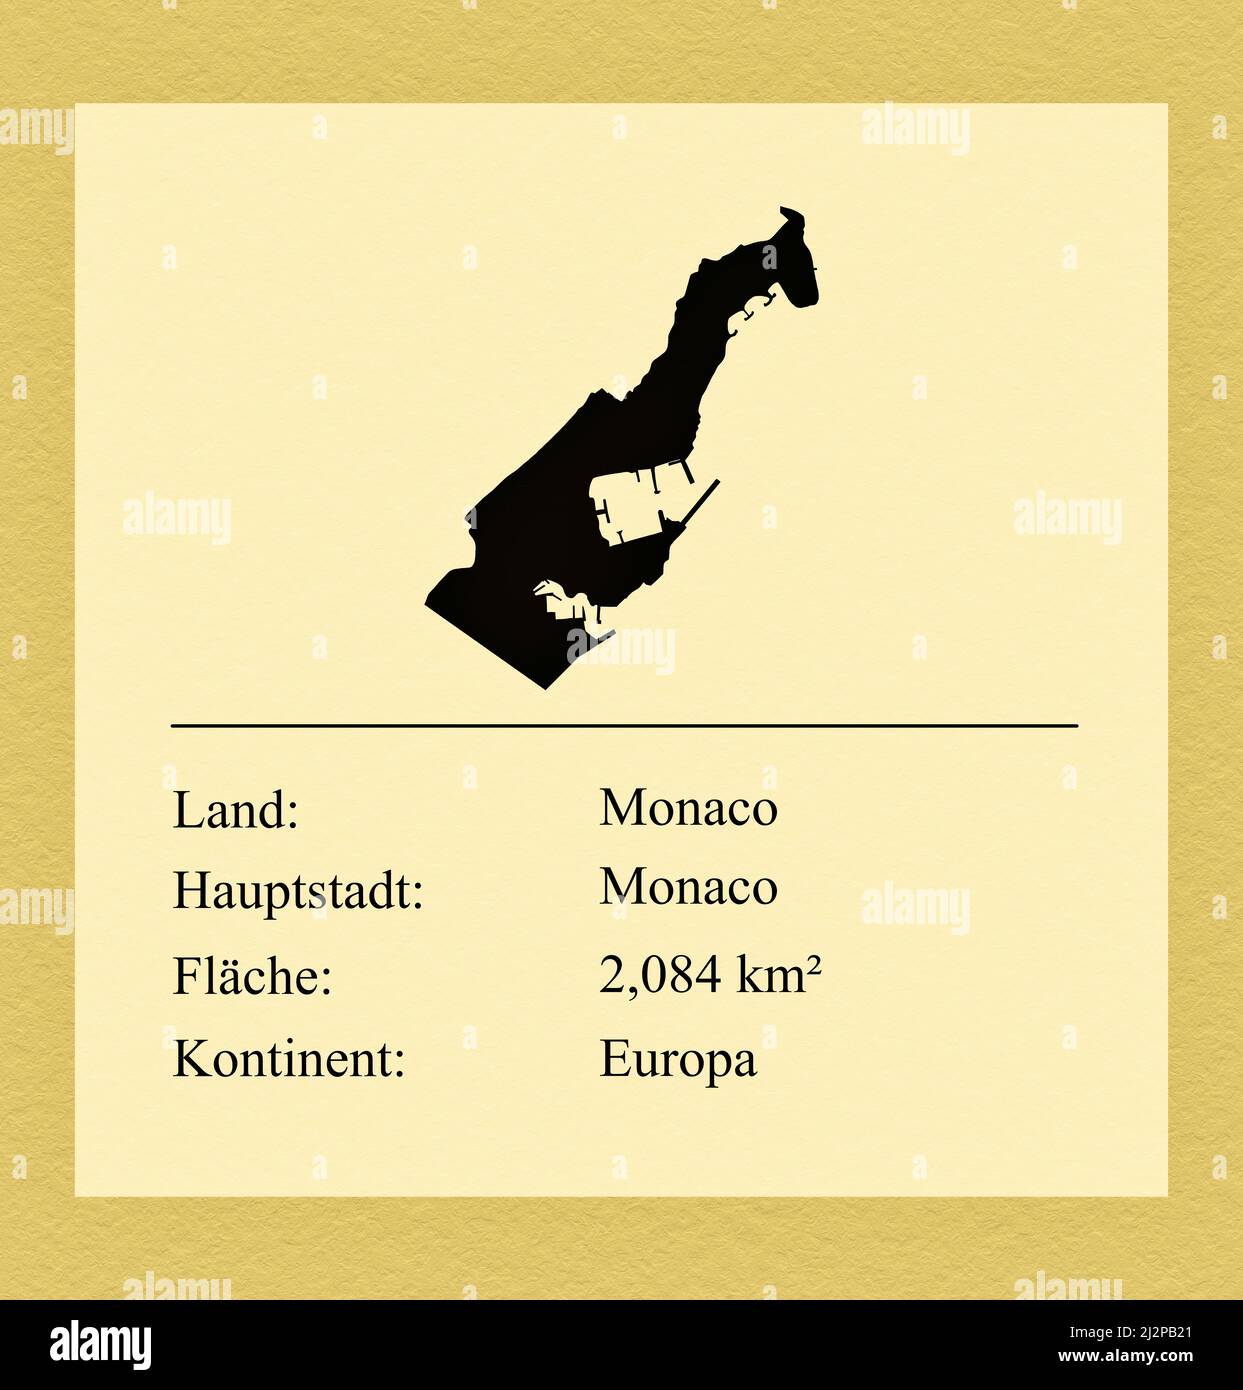 Umrisse des Landes Monaco, darunter ein kleiner Steckbrief mit Ländernamen, Hauptstadt, Fläche und Kontinent Stock Photo